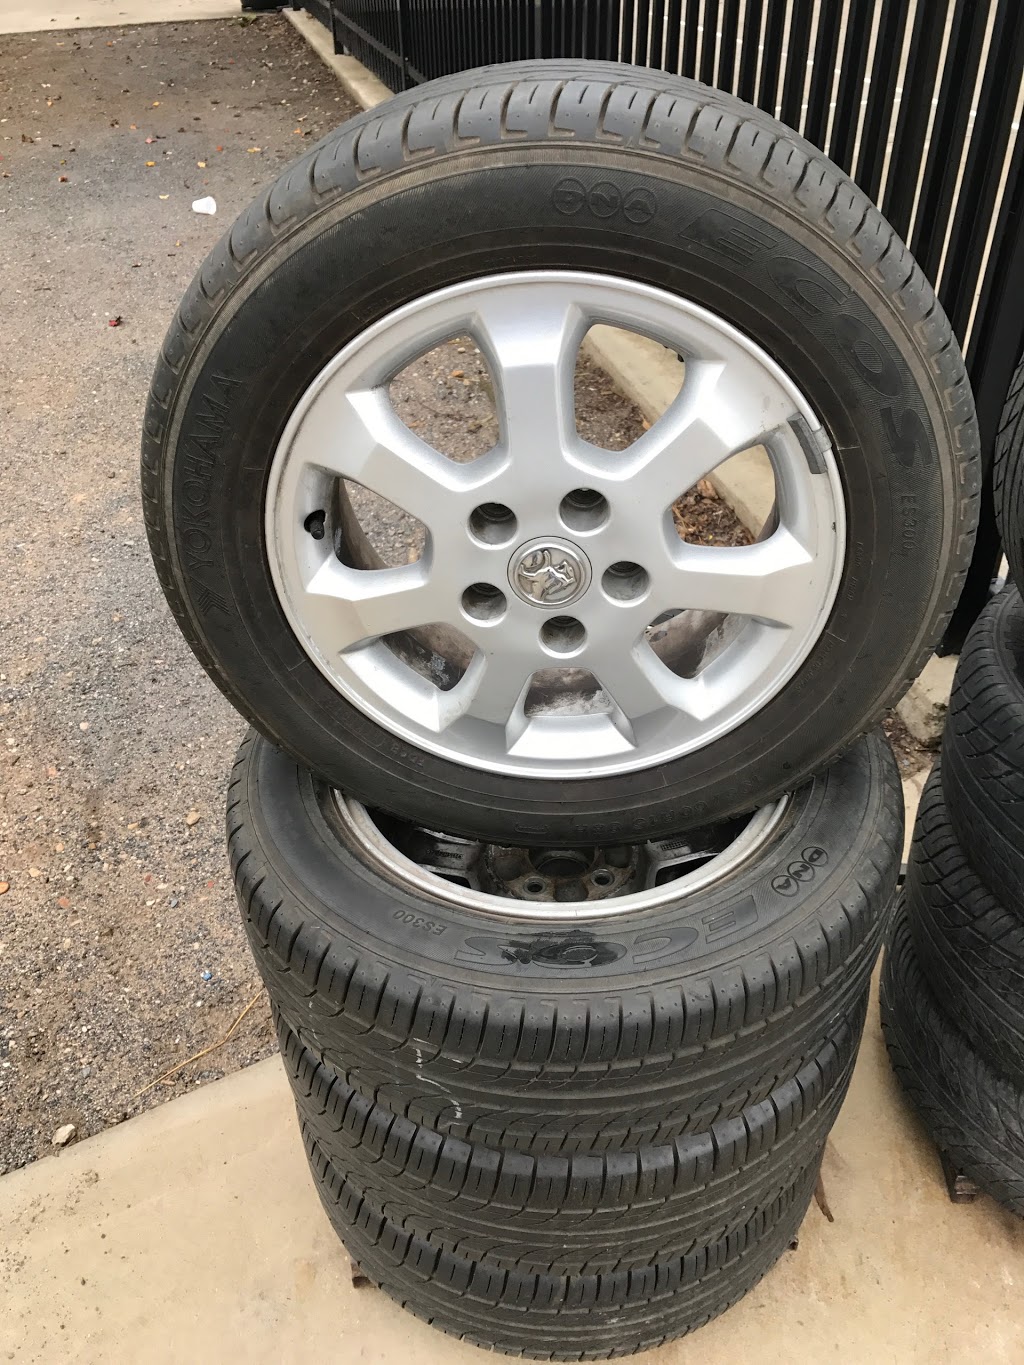 New & Used Tyre Mart | car repair | 2/4 Wingfield Rd, Wingfield SA 5013, Australia | 0882444202 OR +61 8 8244 4202